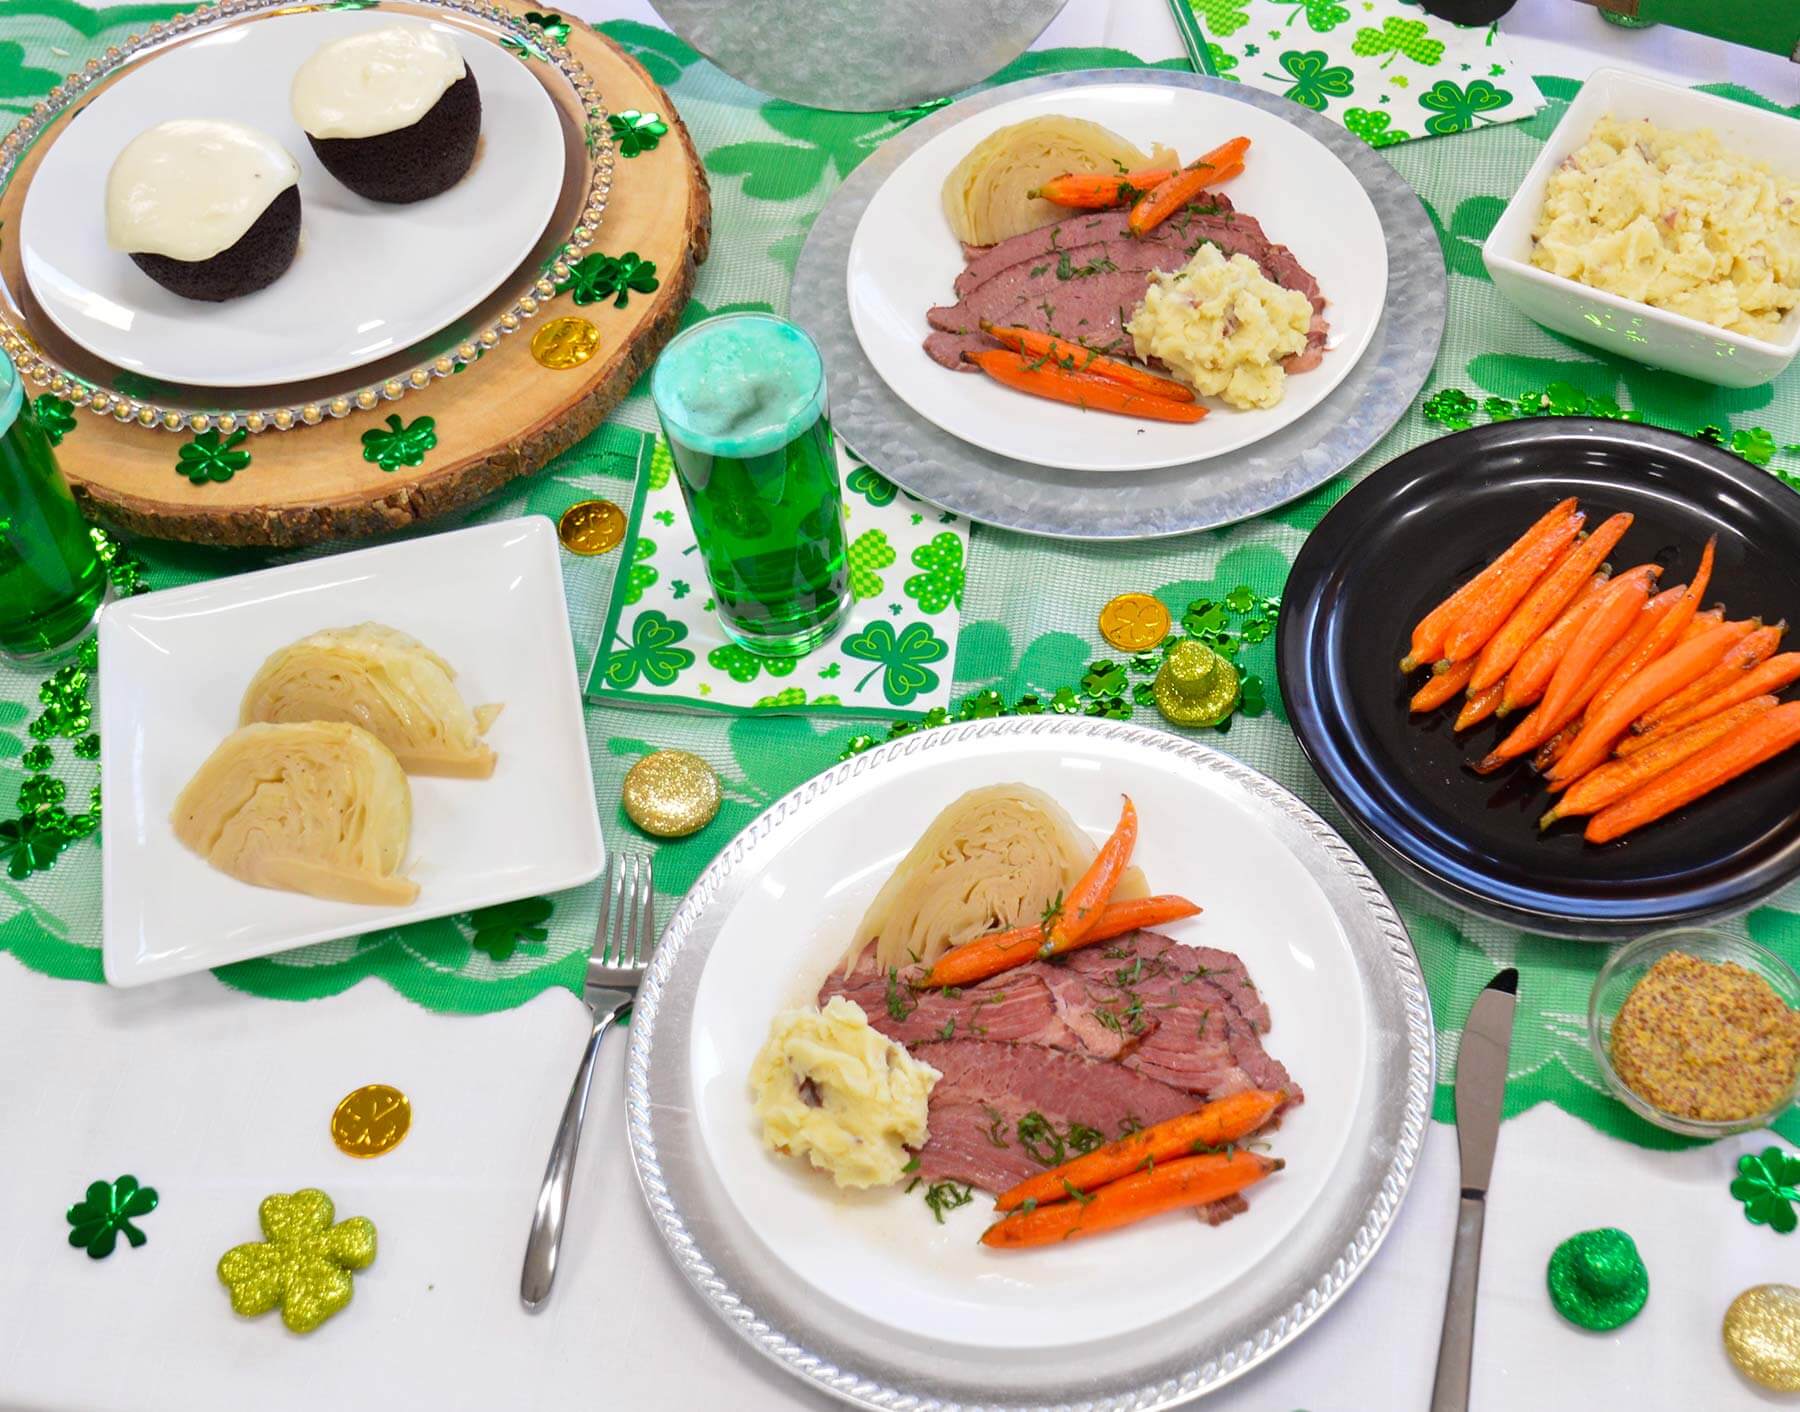 St. Patrick's Day dinner